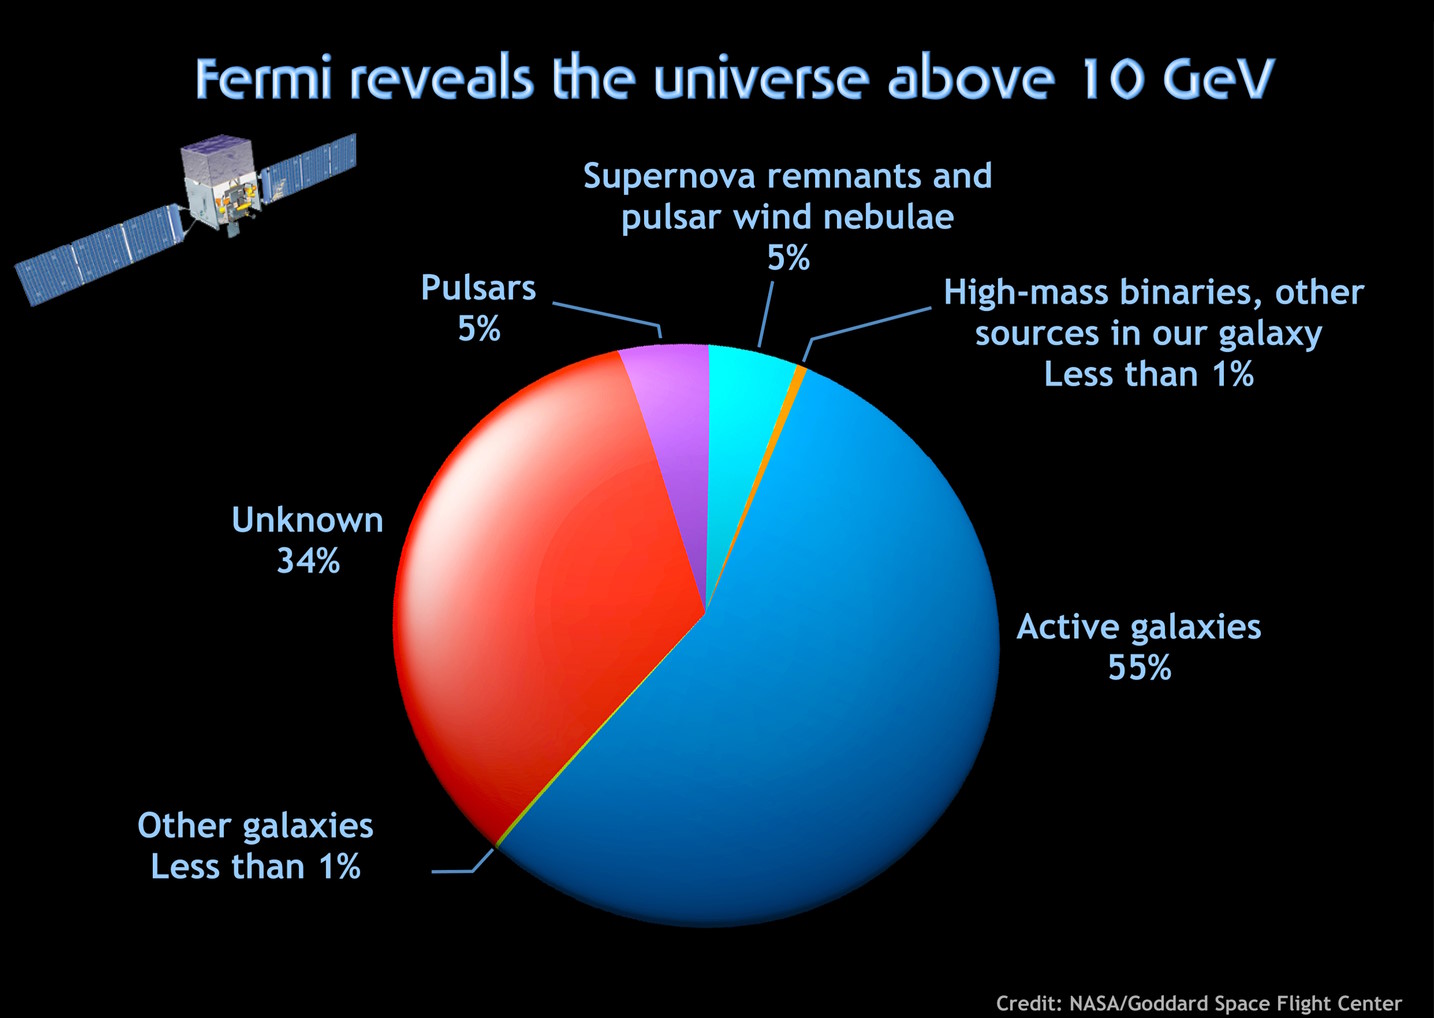 Pie chart showing Fermi sources above 10 GeV